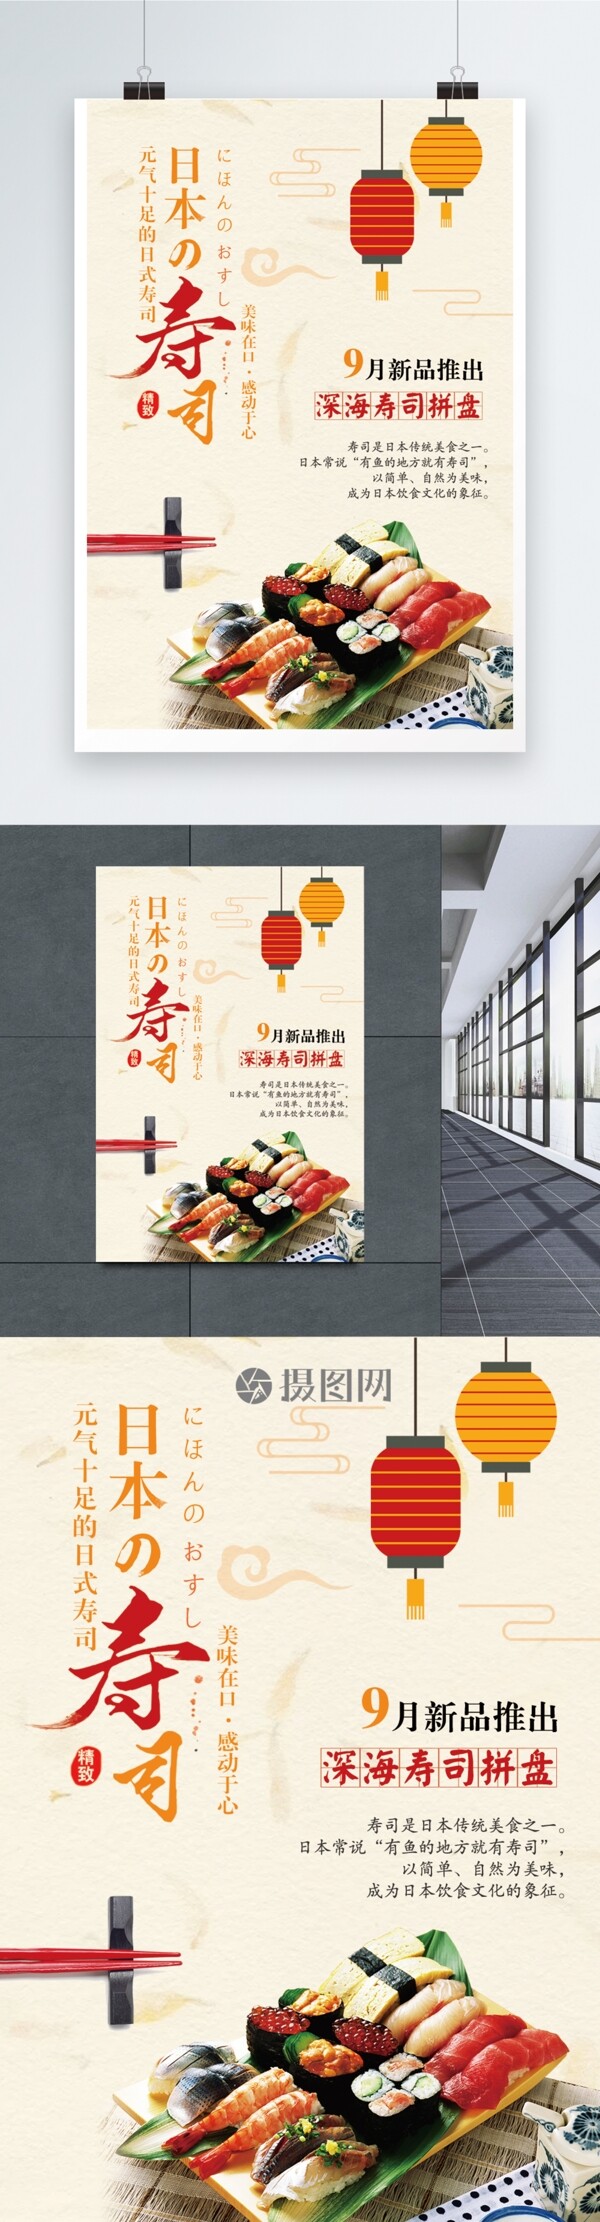 日本寿司广告宣传海报